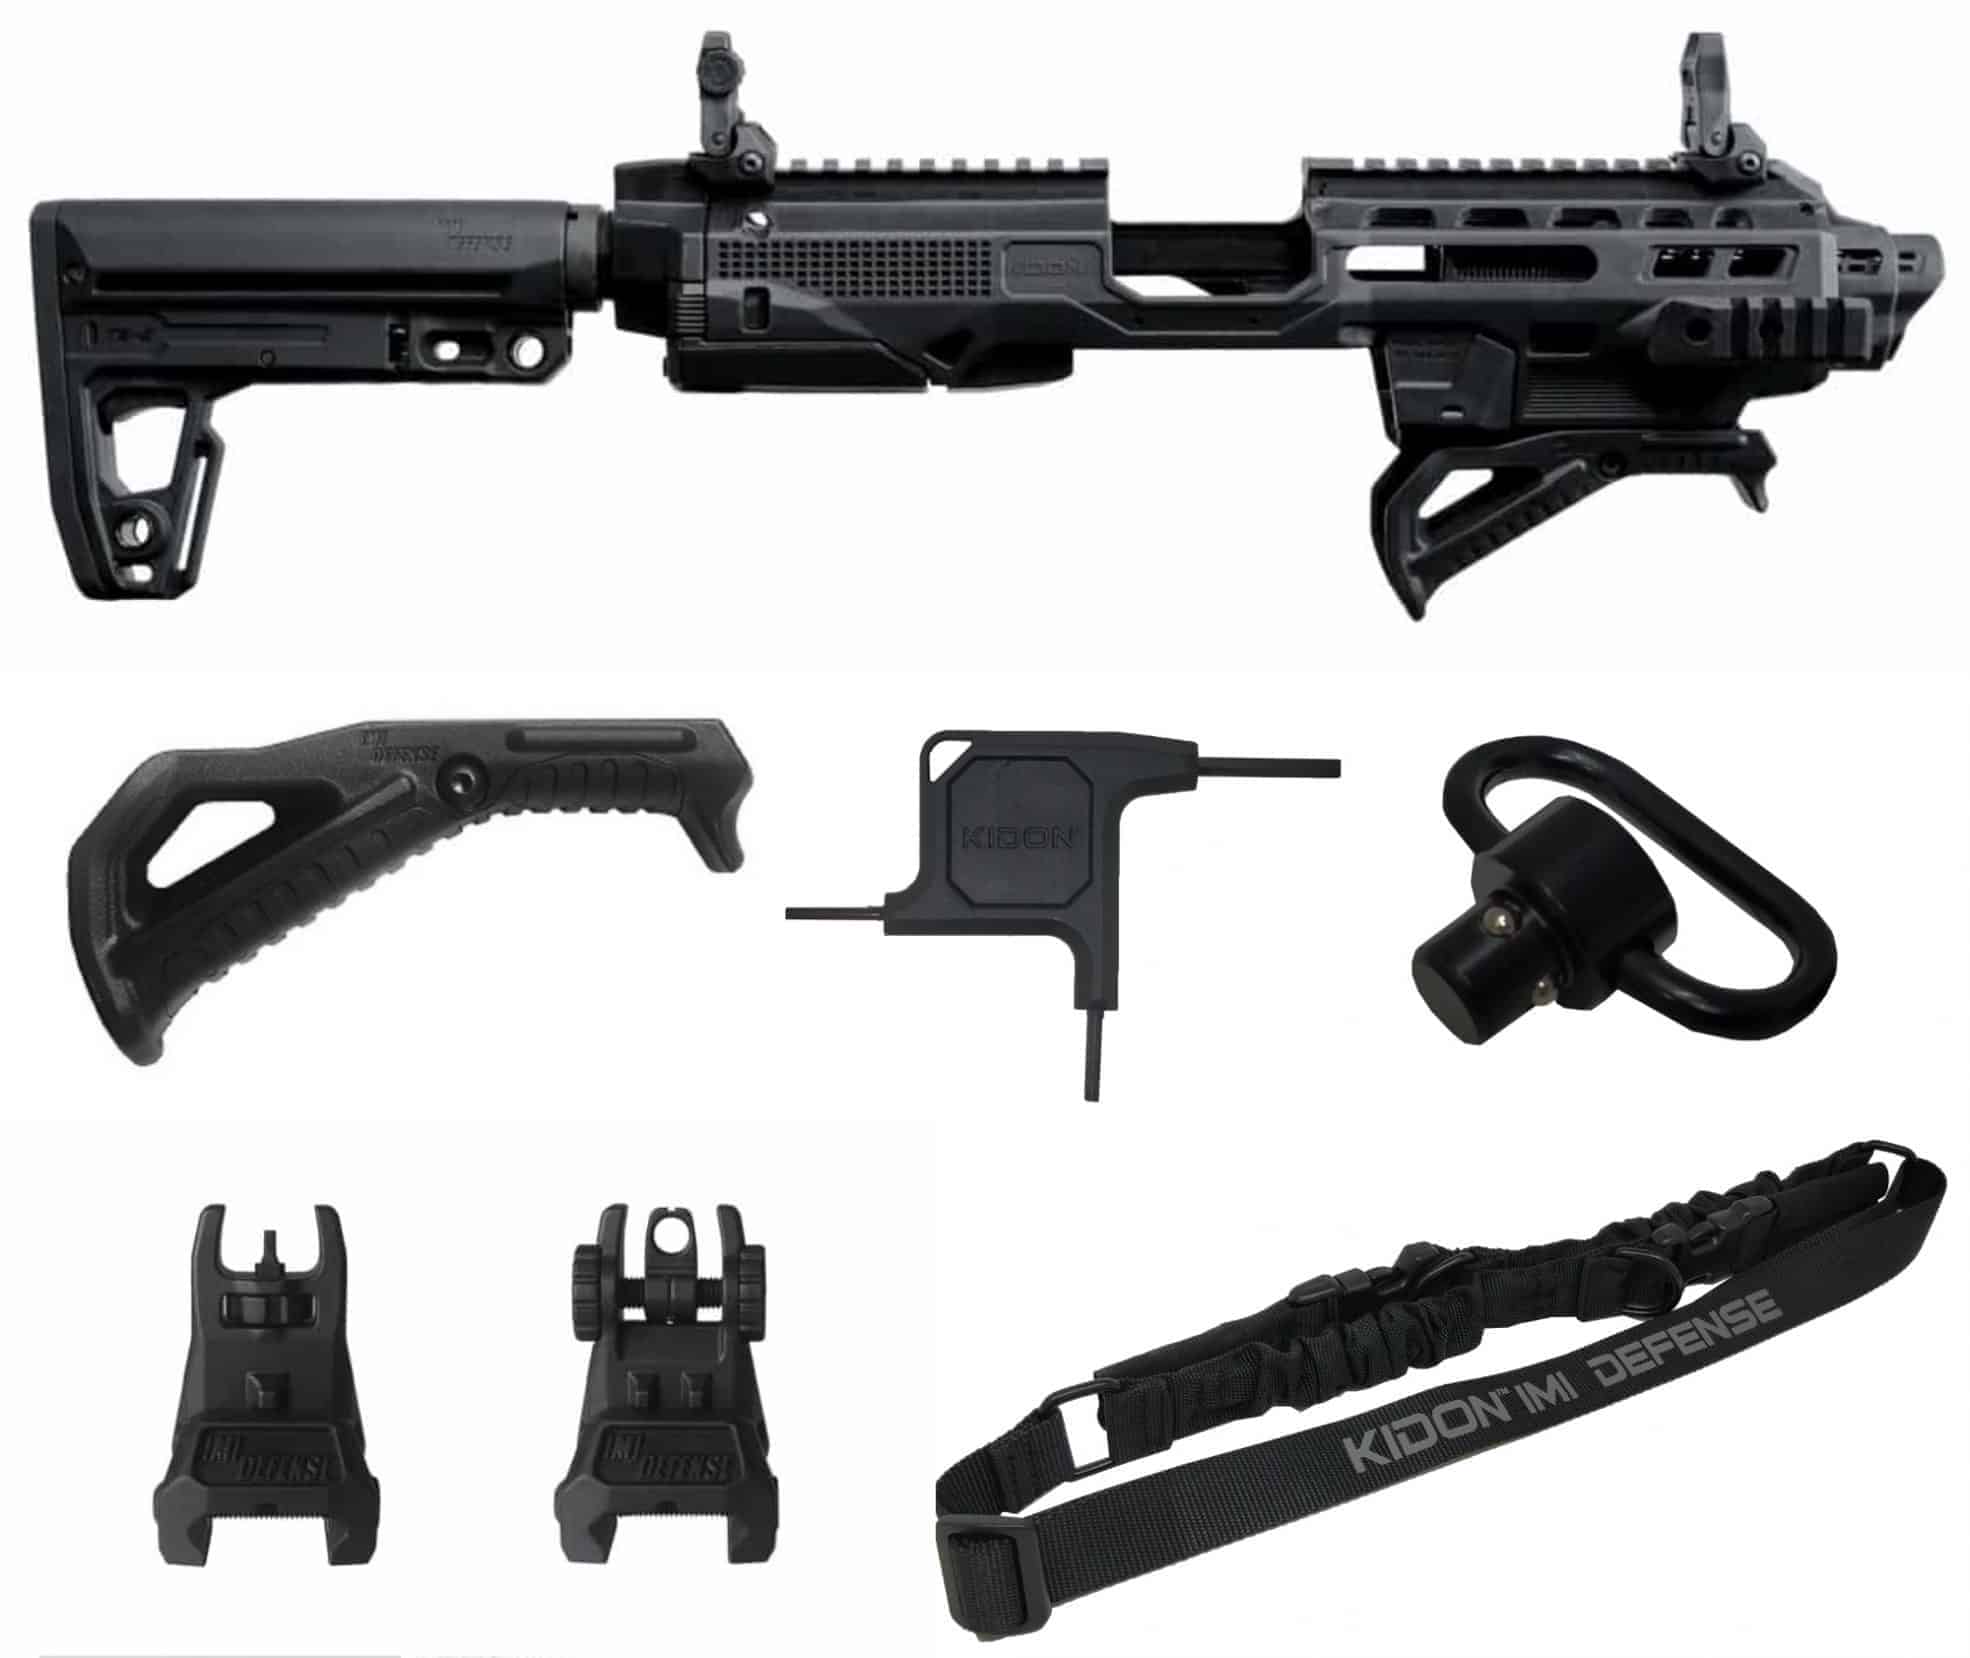 imi-defense-kidon-nfa-conversion-kit-for-over-100-pistols-yrsinc